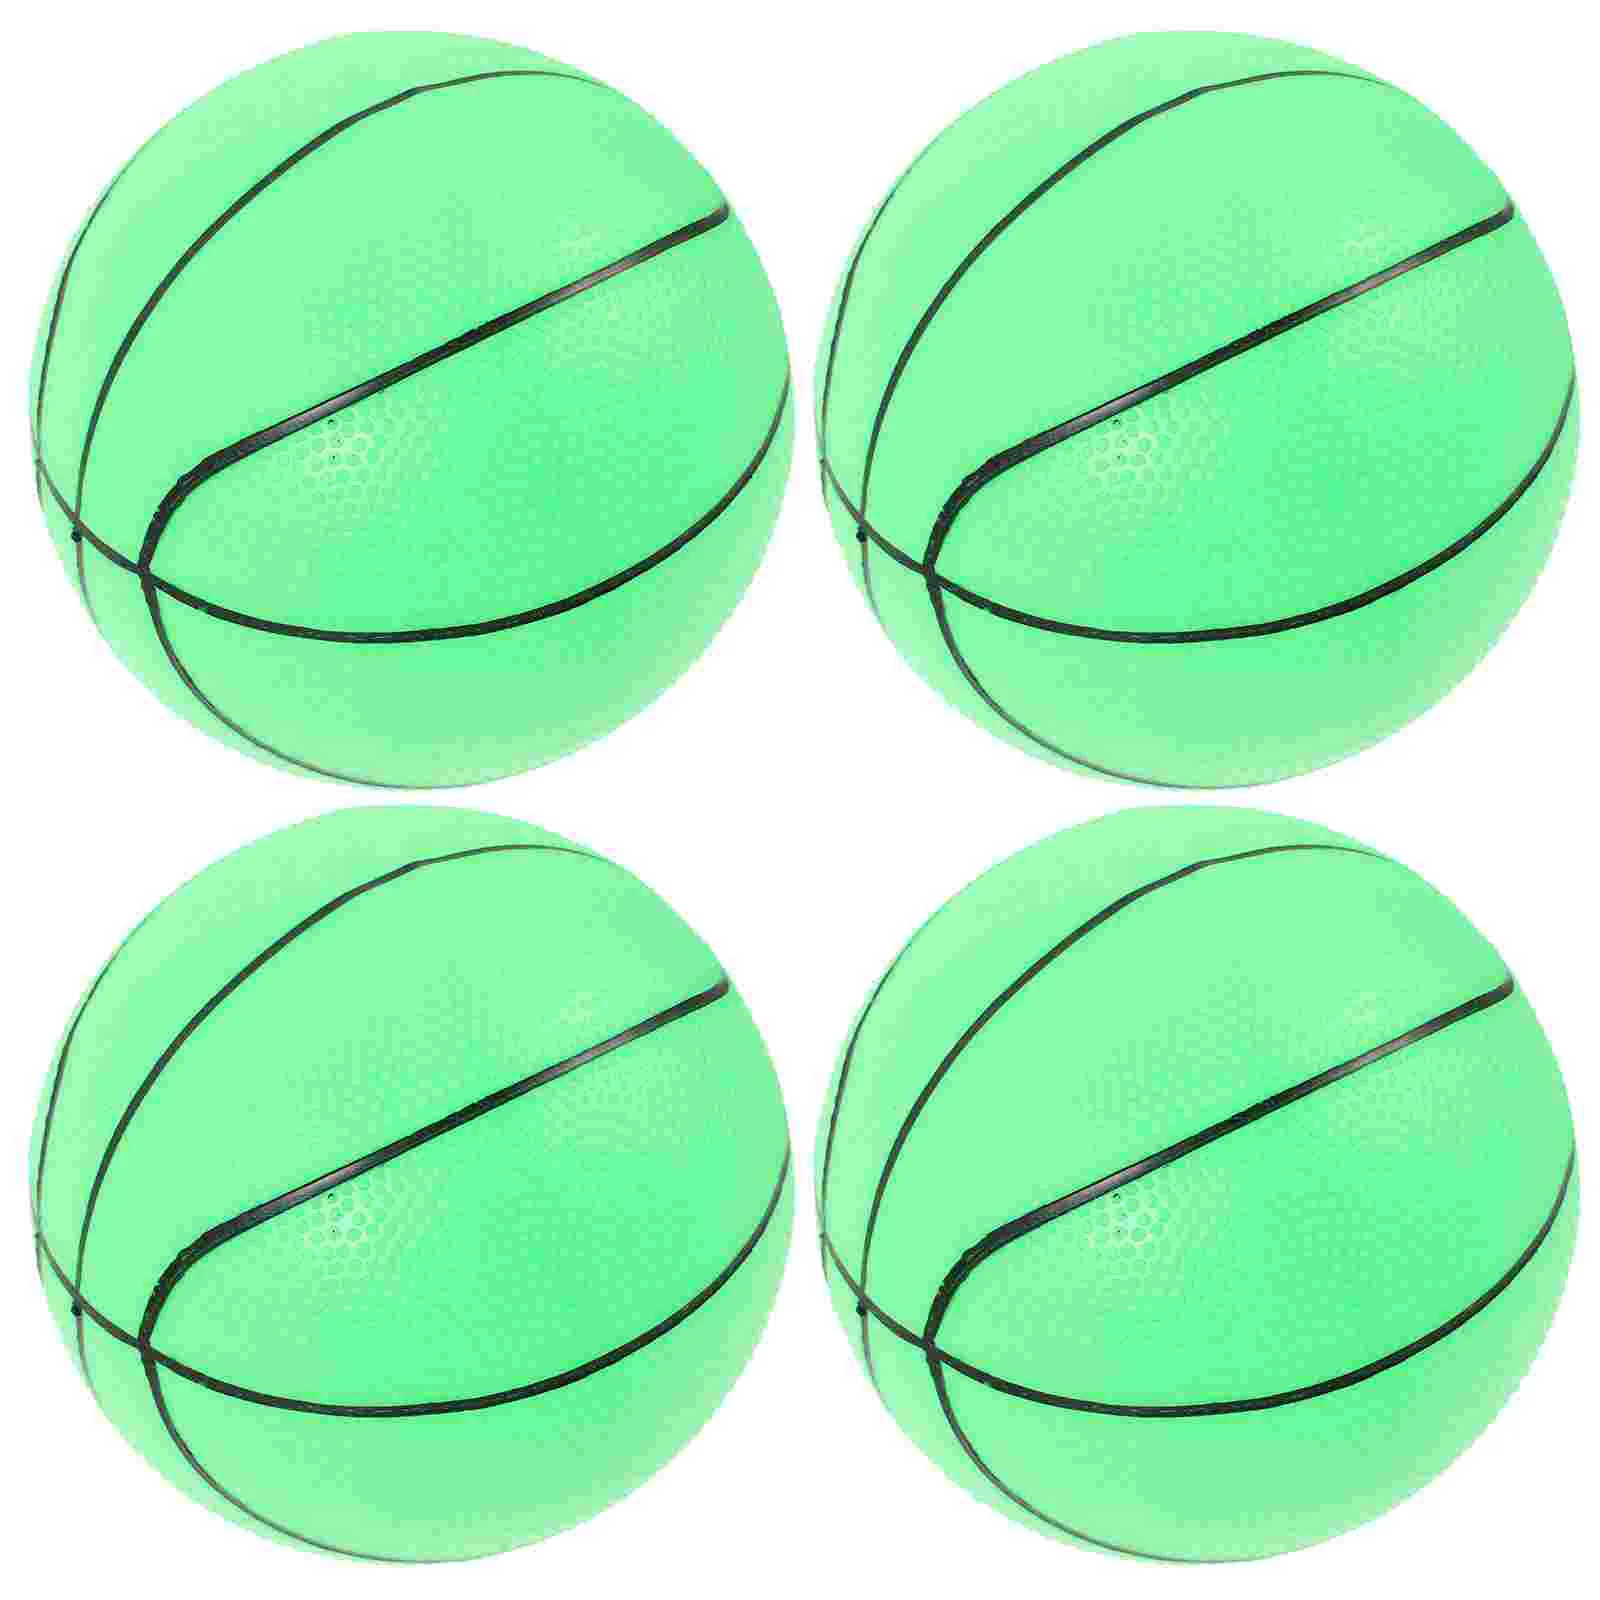 

1 комплект детских светящихся баскетбольных пластиковых баскетбольных мячей, Детские тренировочные баскетбольные мячи с насосом